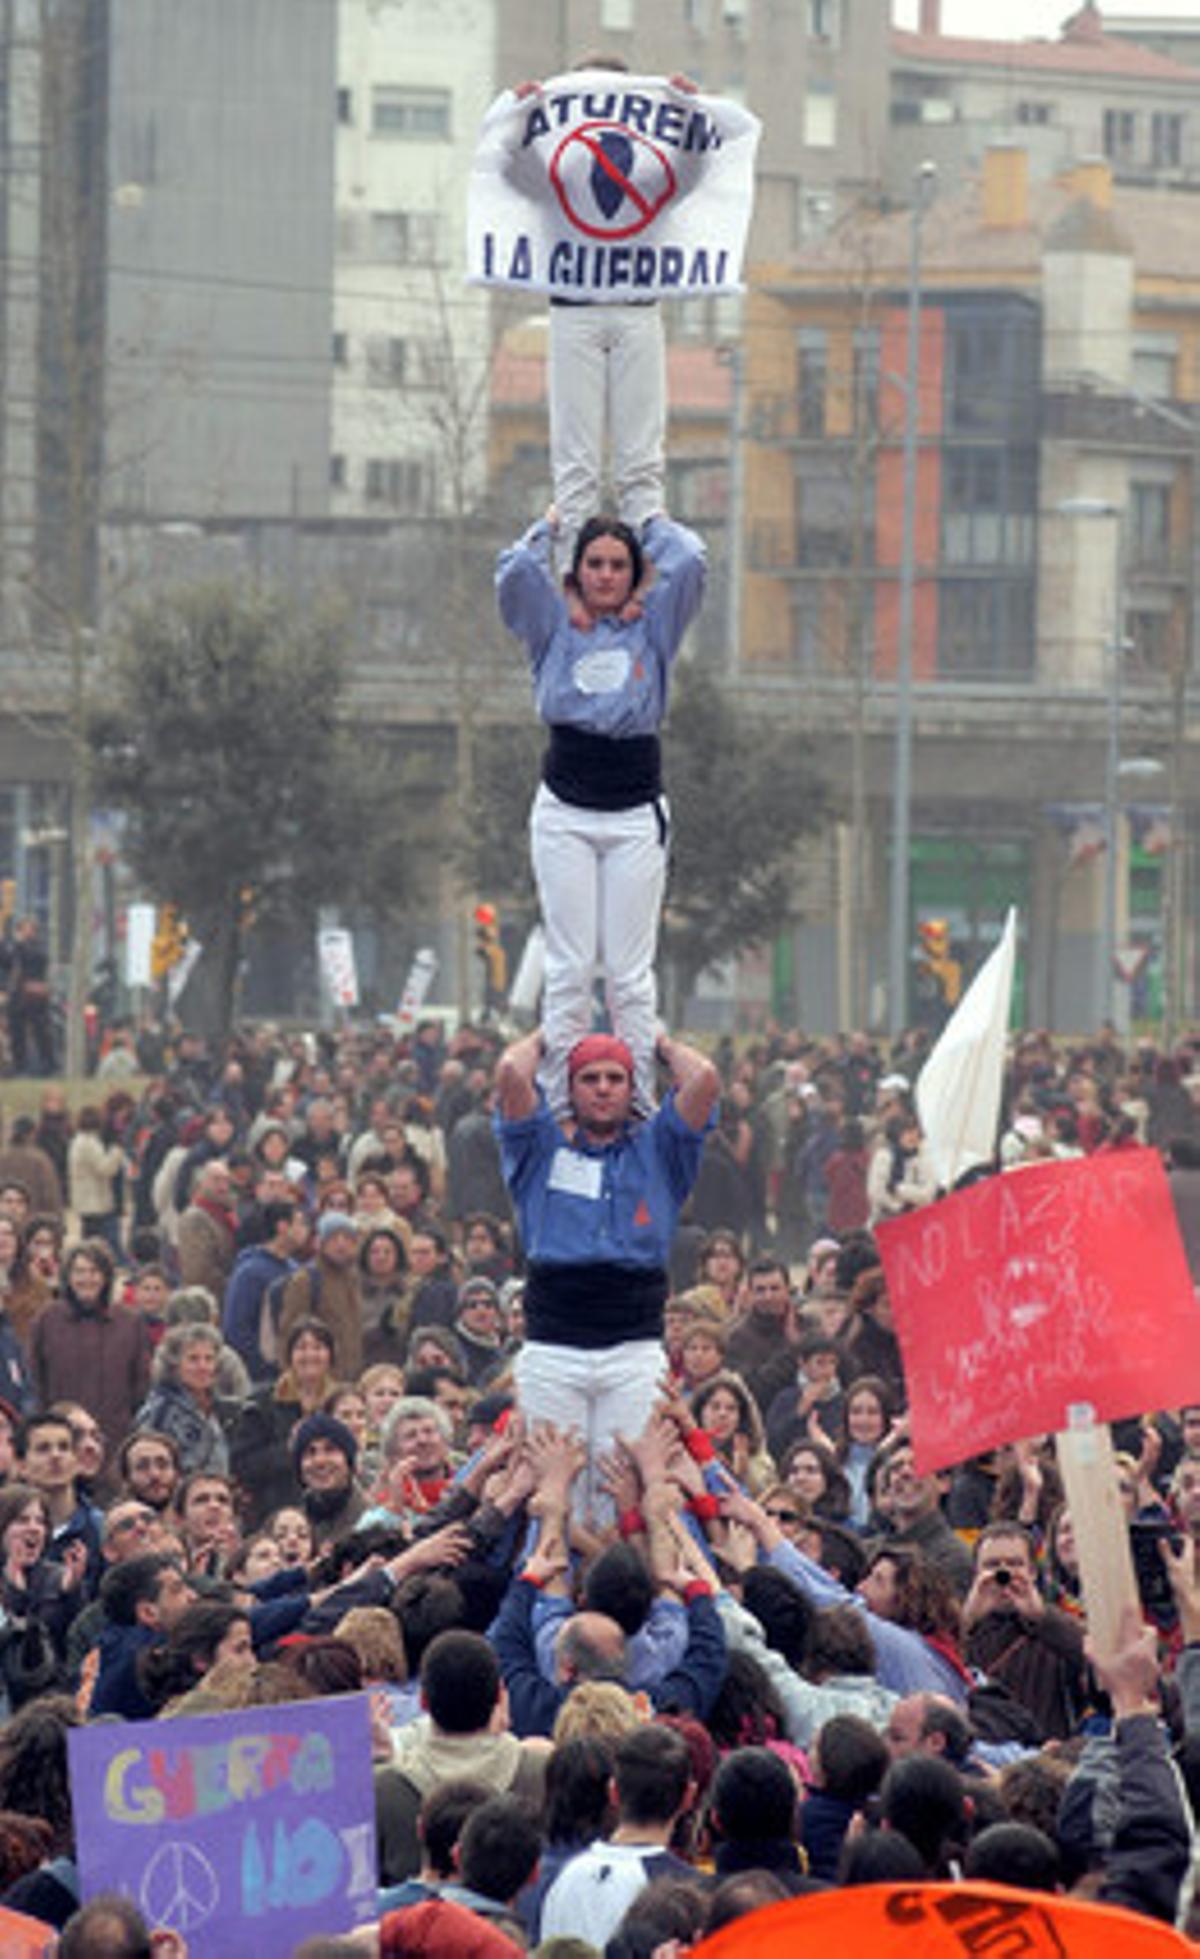 La afluencia de manifestantes batió récords en toda Catalunya. En la foto, unos ’castellers’ levantan una pancarta en Girona con el lema ’Aturem la guerra’. Cerca de 30.000 personas marcharon por las calles de la ciudad a favor de la paz.